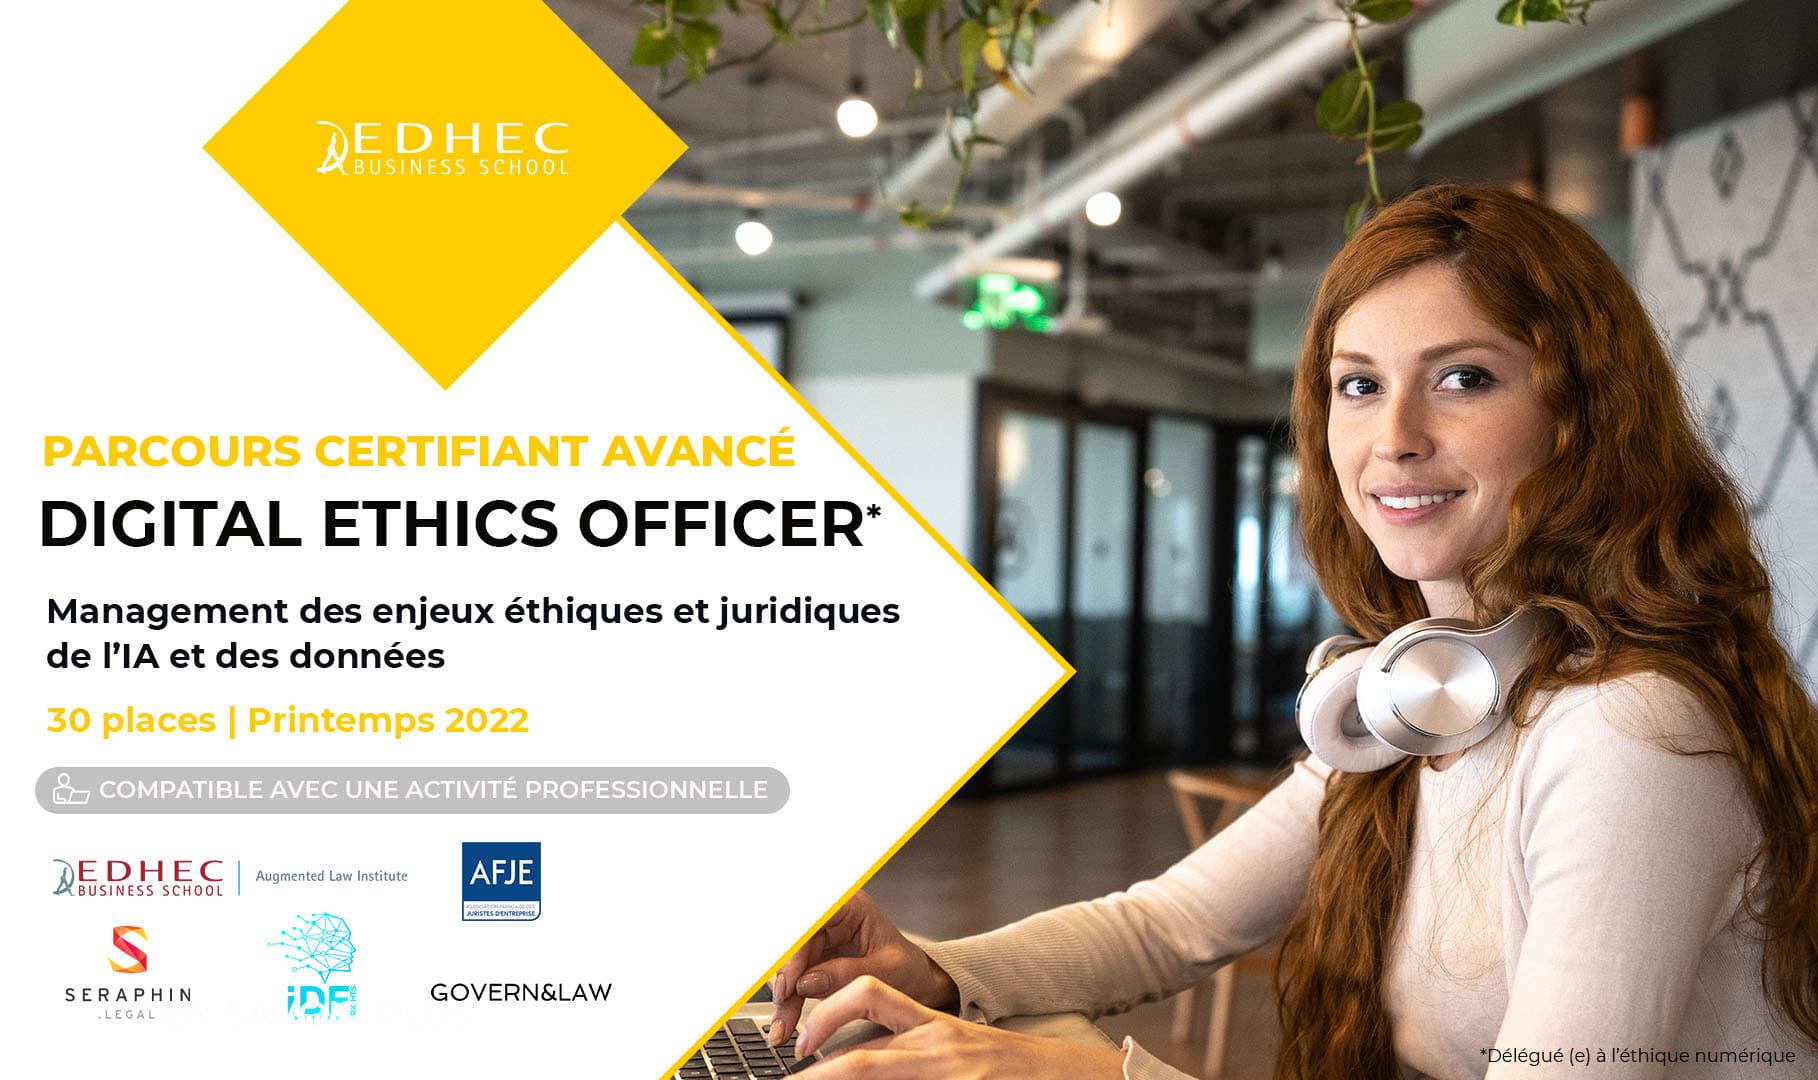 L’iDFRights est partenaire du parcours certifiant avancé « Digital Ethics Officer – Management des enjeux éthiques et juridiques de l’IA et des données », une formation de l’EDHEC Augmented Law Institute.